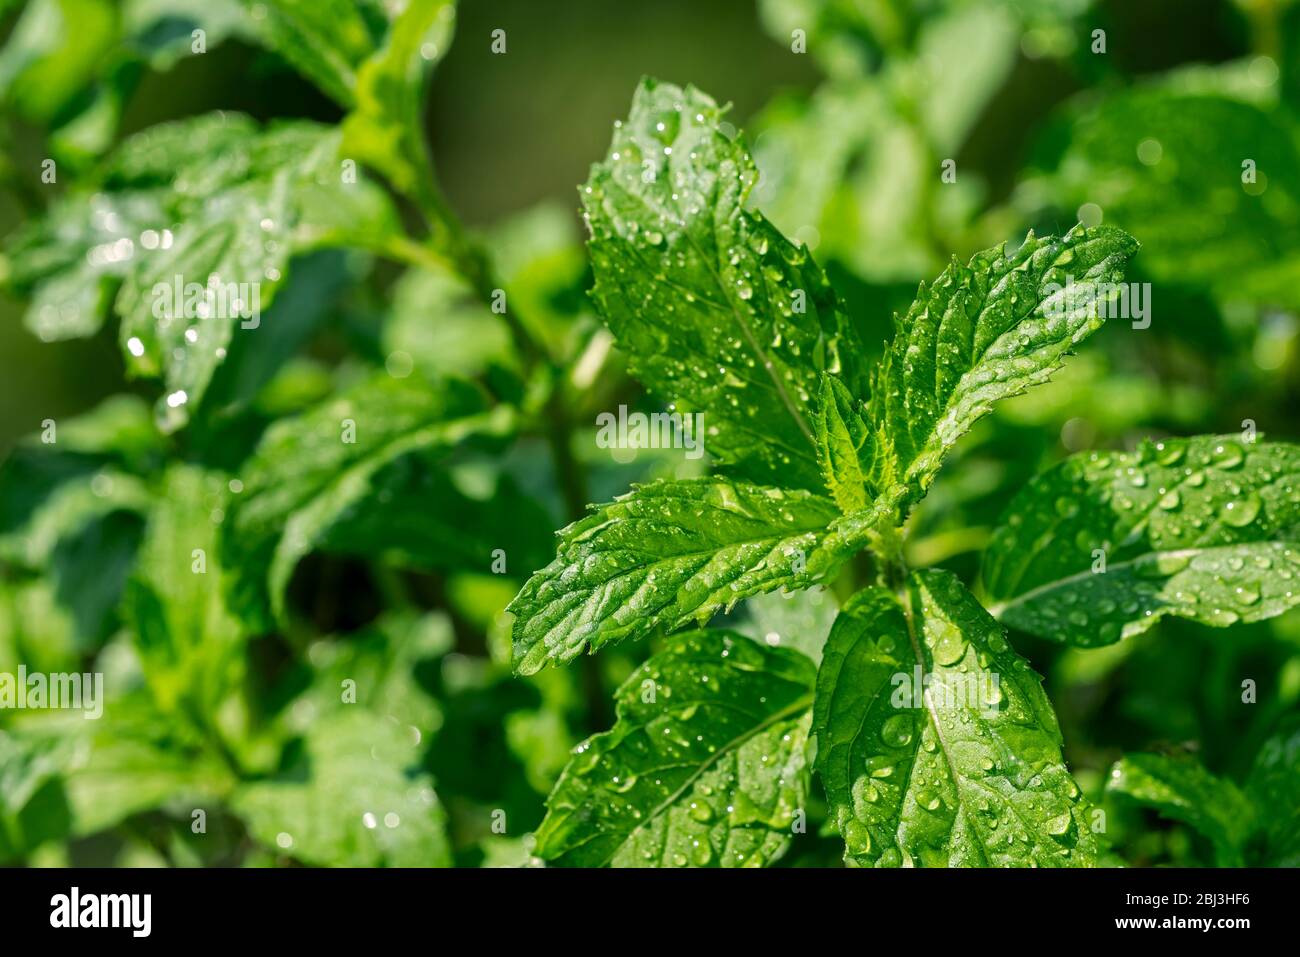 Gros plan de feuilles vertes humides de menthe poivrée (Mentha x piperita Swiss), croix entre menthe aquatique et menthe verte Banque D'Images